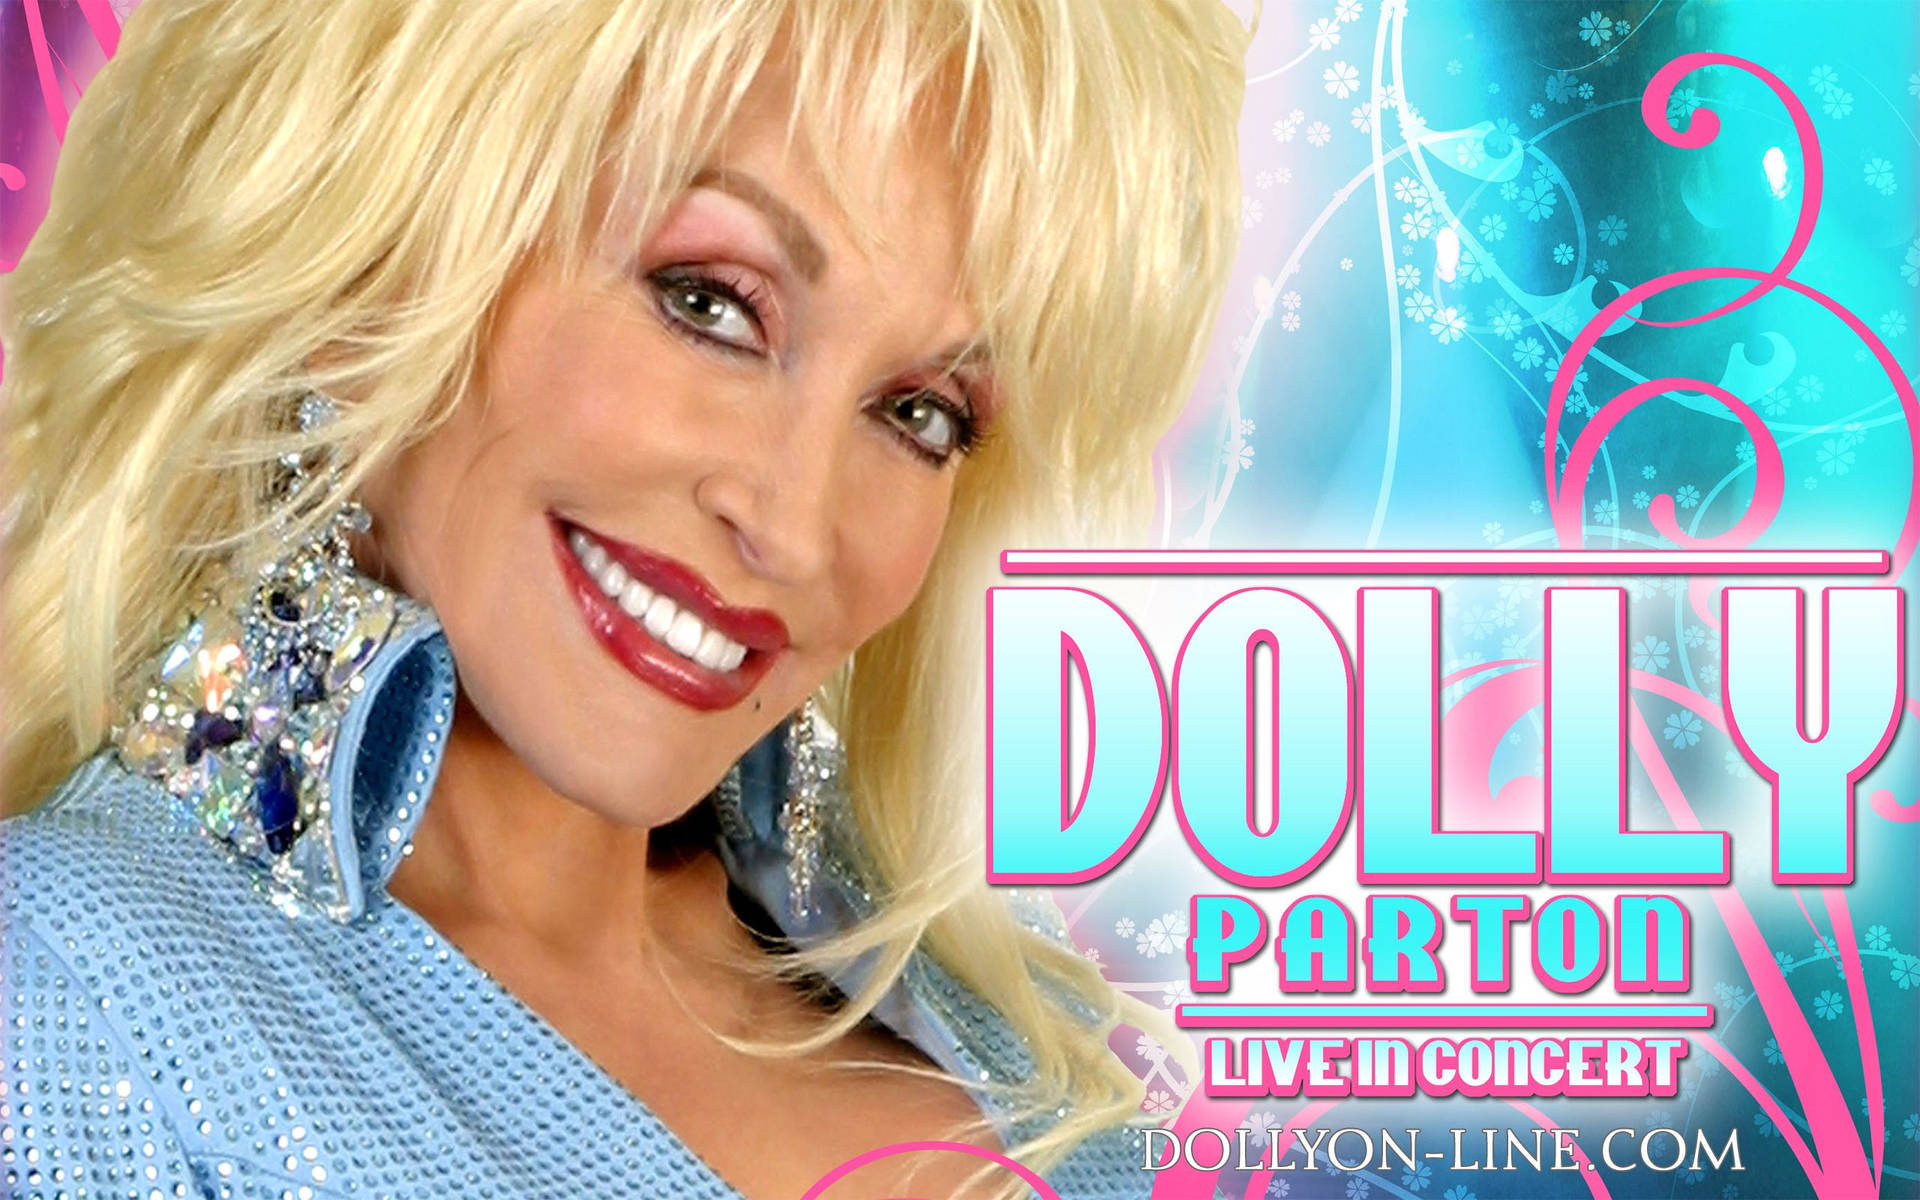 Dolly Parton Poster Photograph Wallpaper